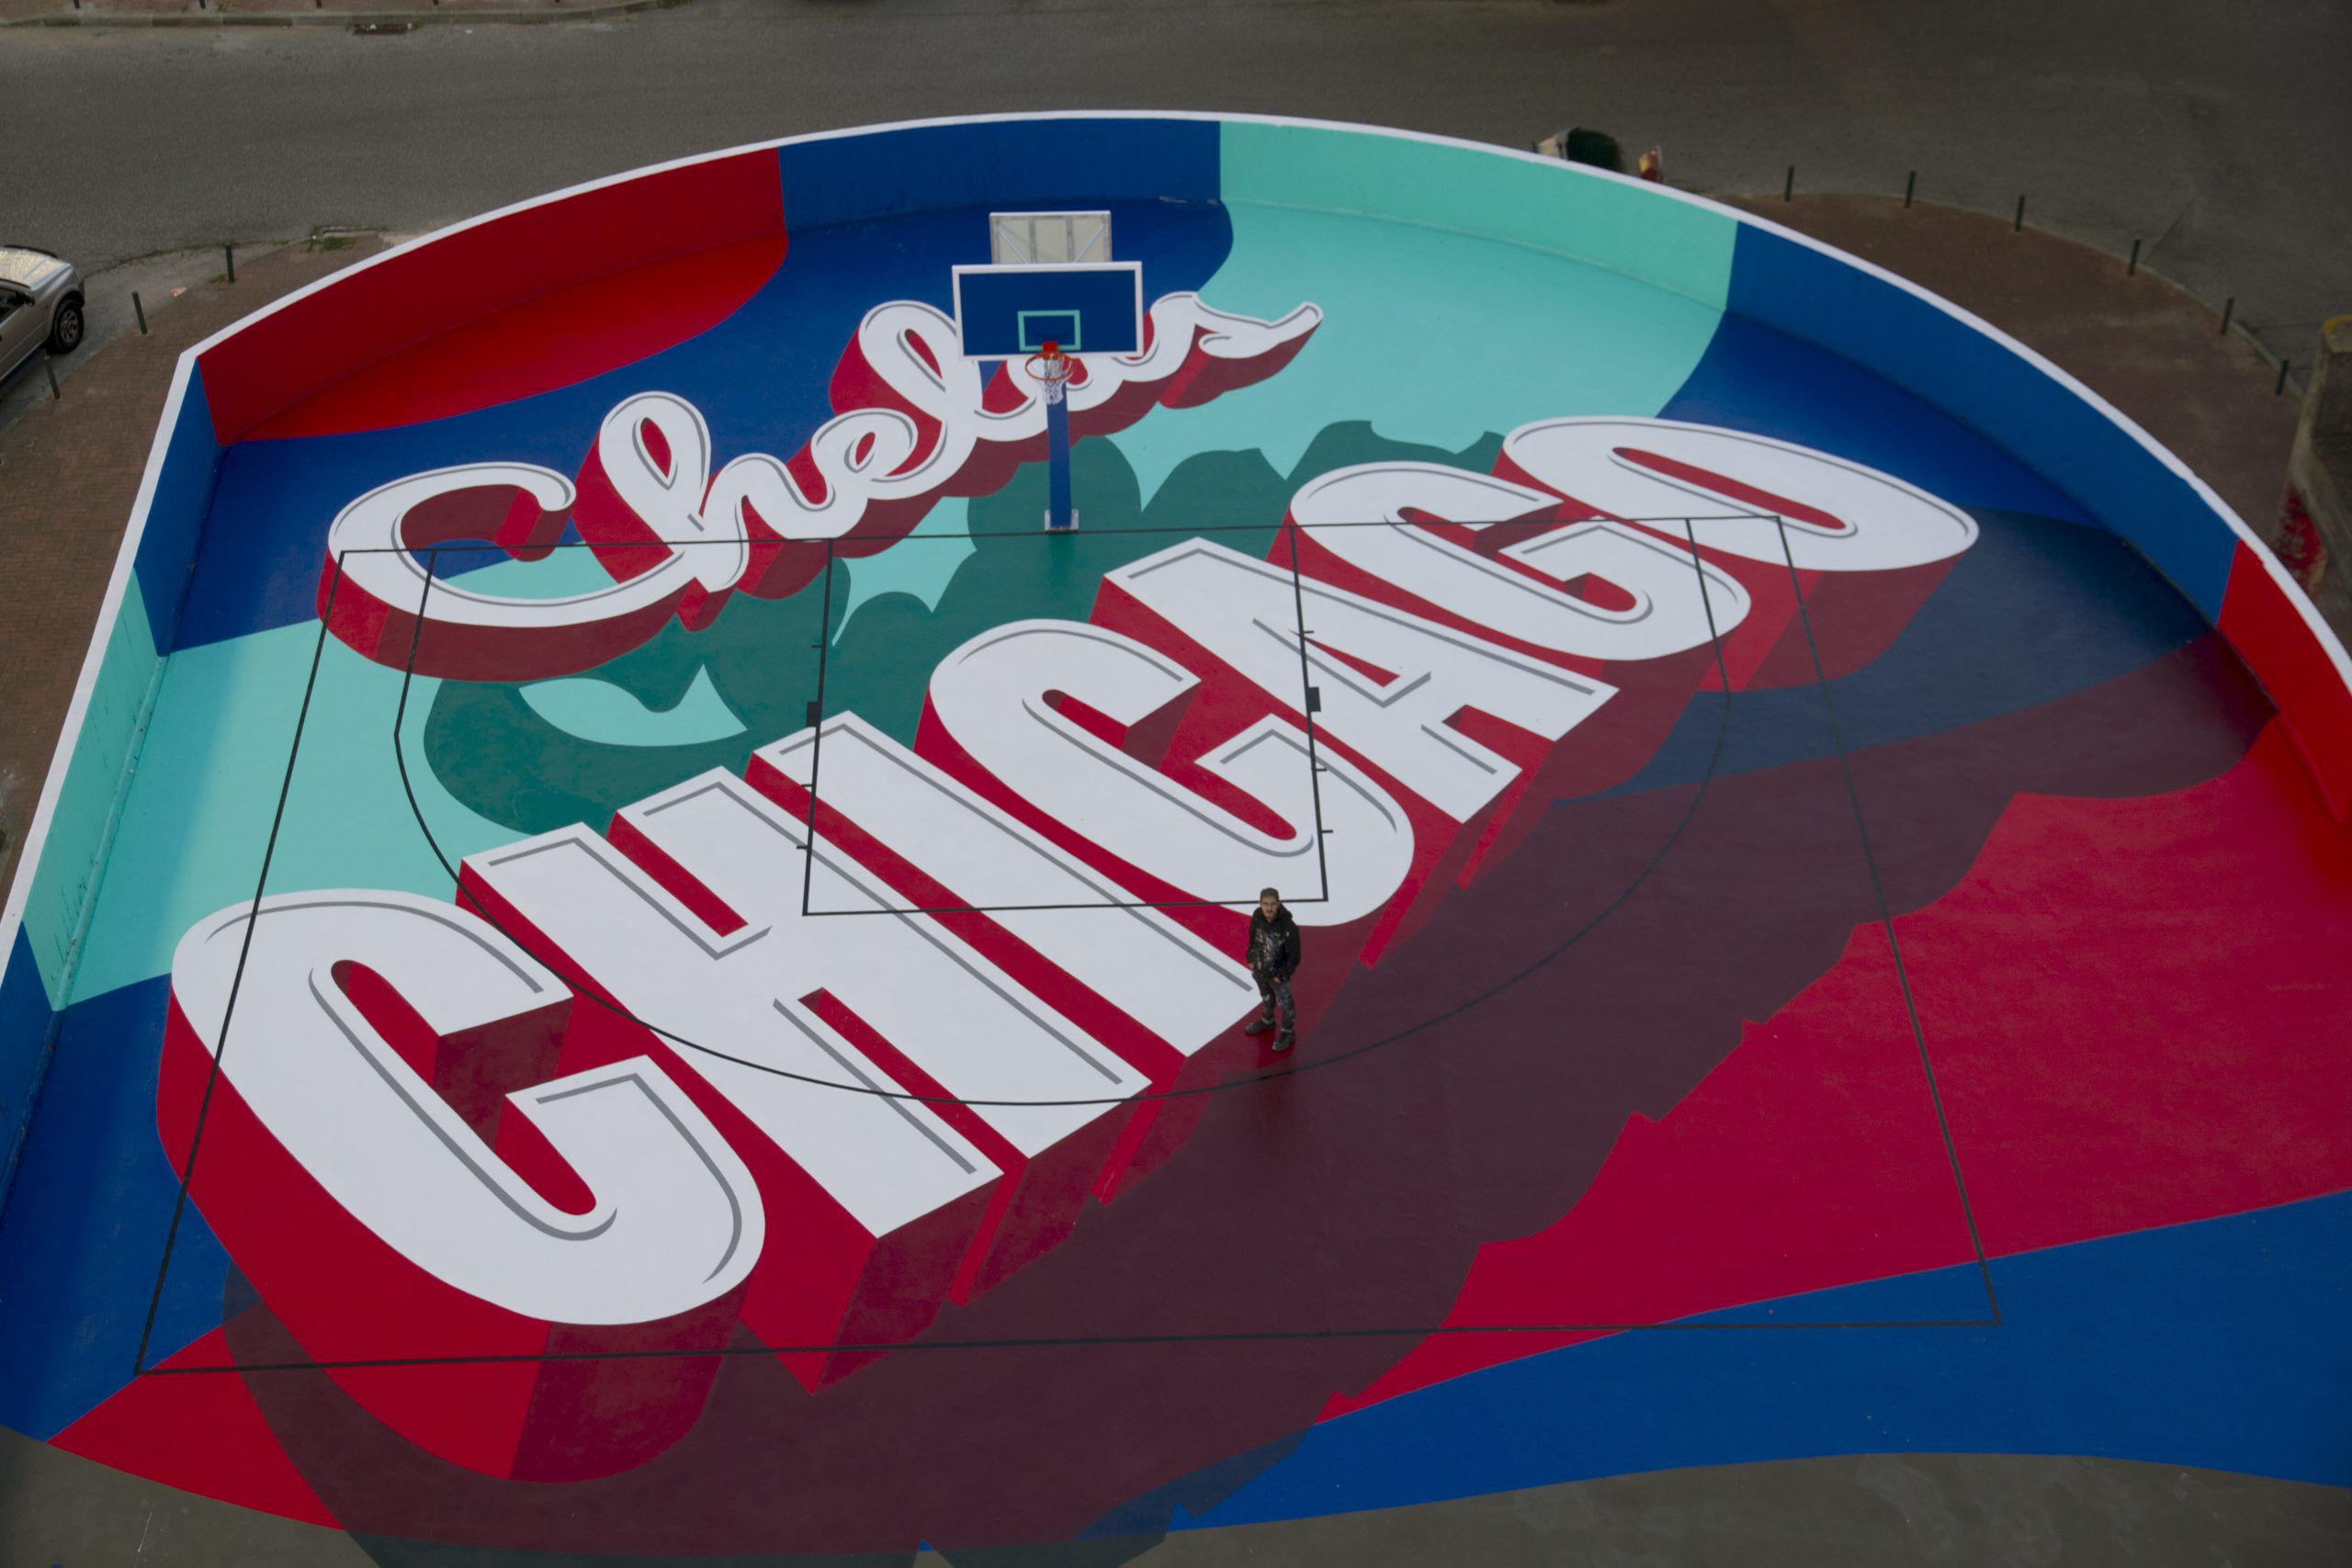 Chicago, em Chelas, é remodelado. Campo de basquetebol marca regresso de Sam The Kid aos Official Nasty